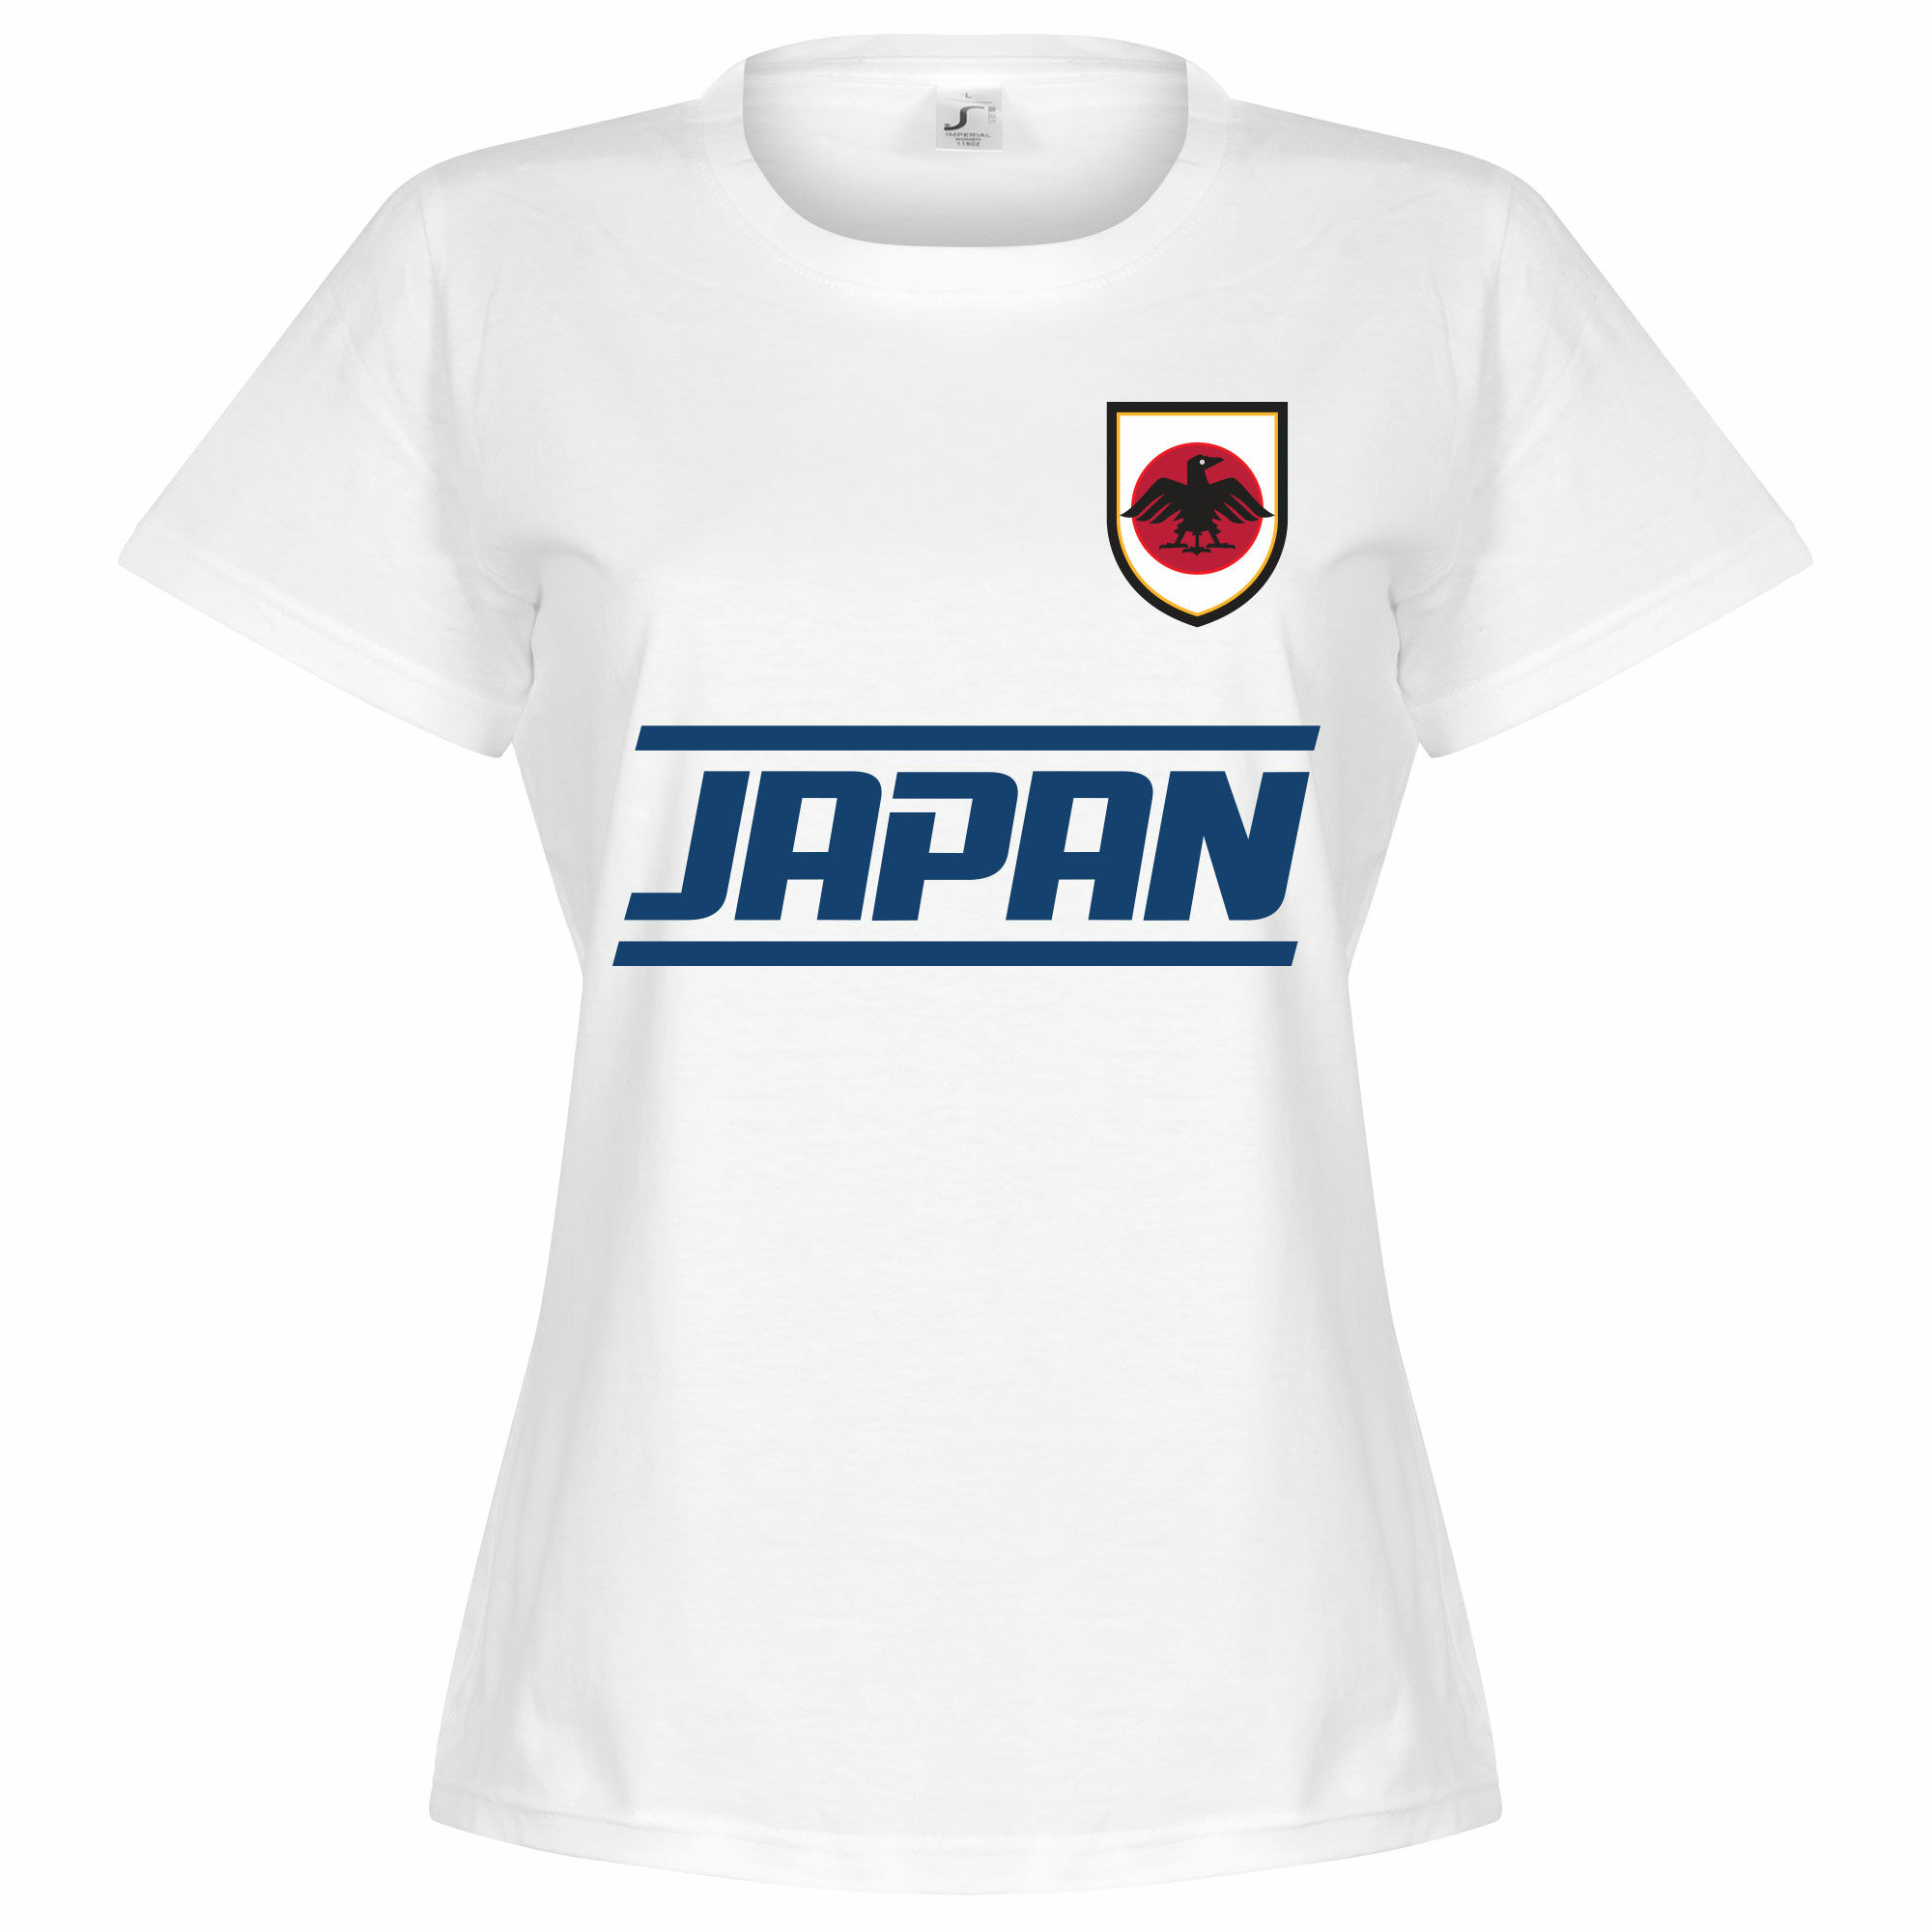 Japonsko - Tričko dámské - bílé